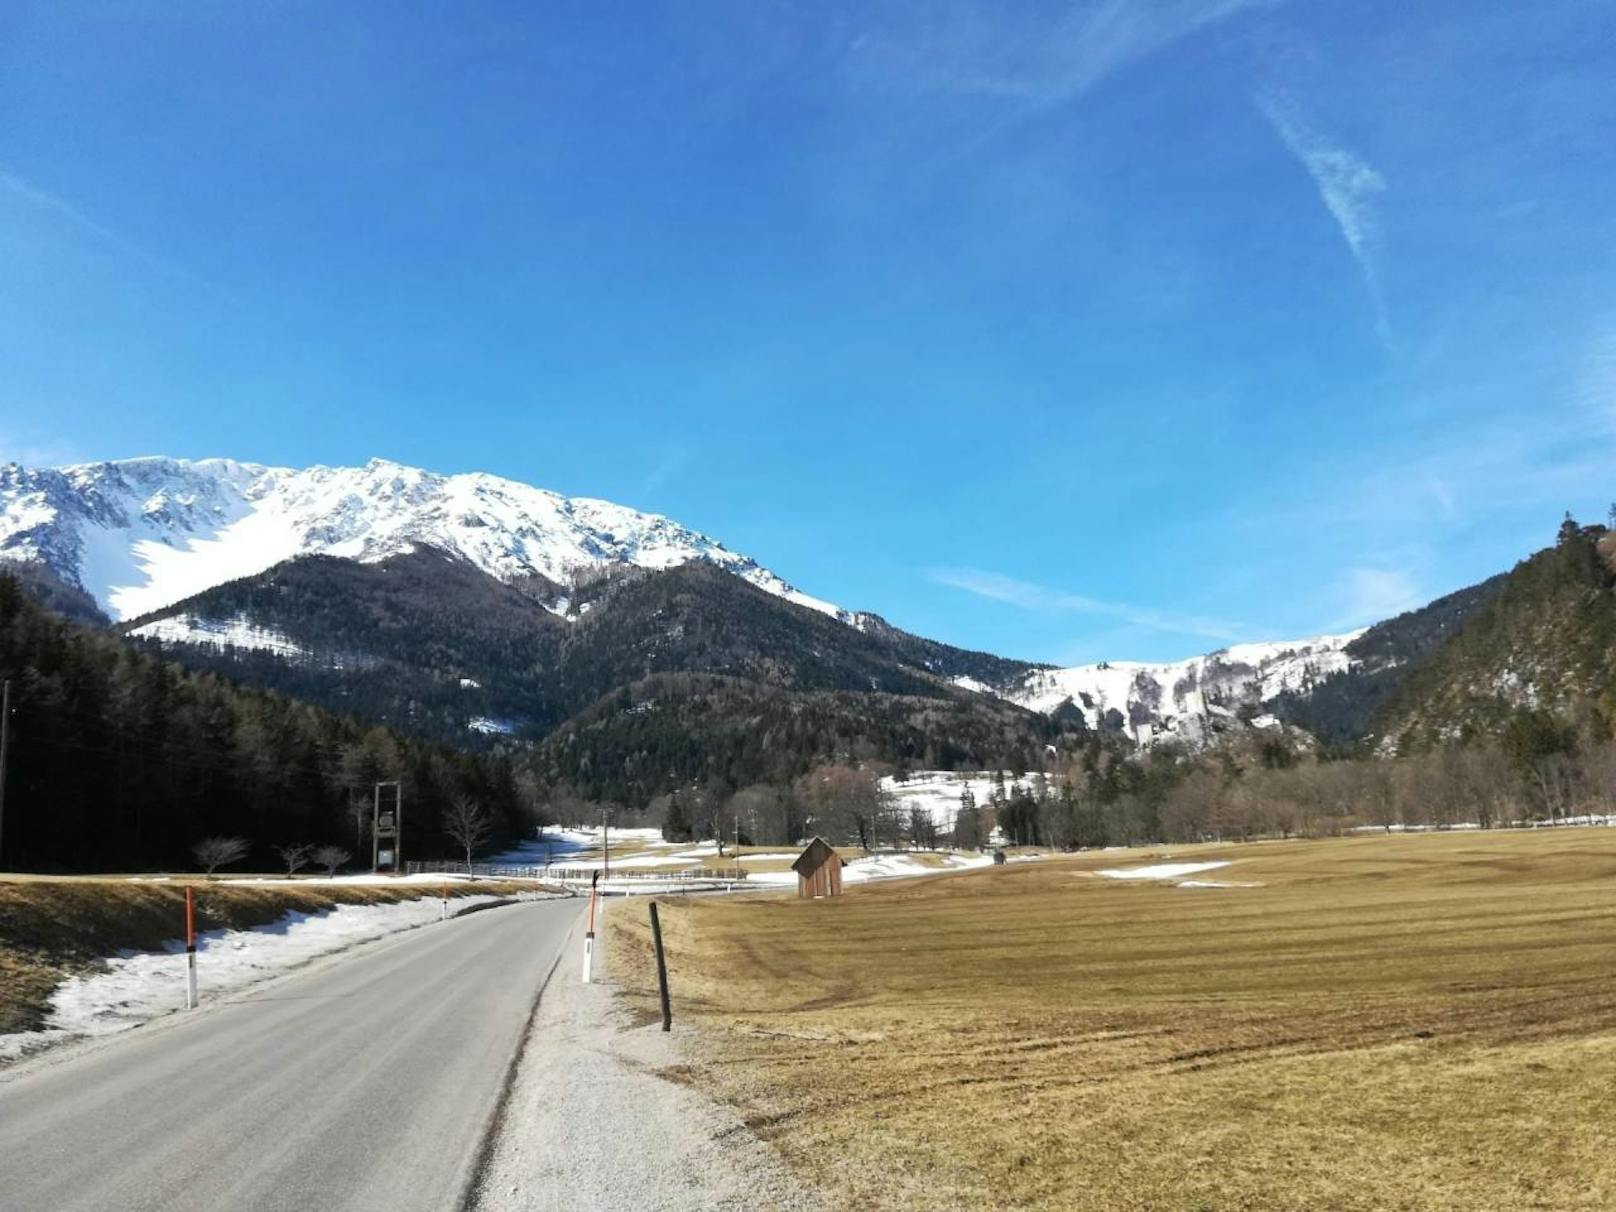 "Heute habe ich das wunderschöne Wetter genutzt um in Puchberg am Schneeberg spazieren zu gehen."